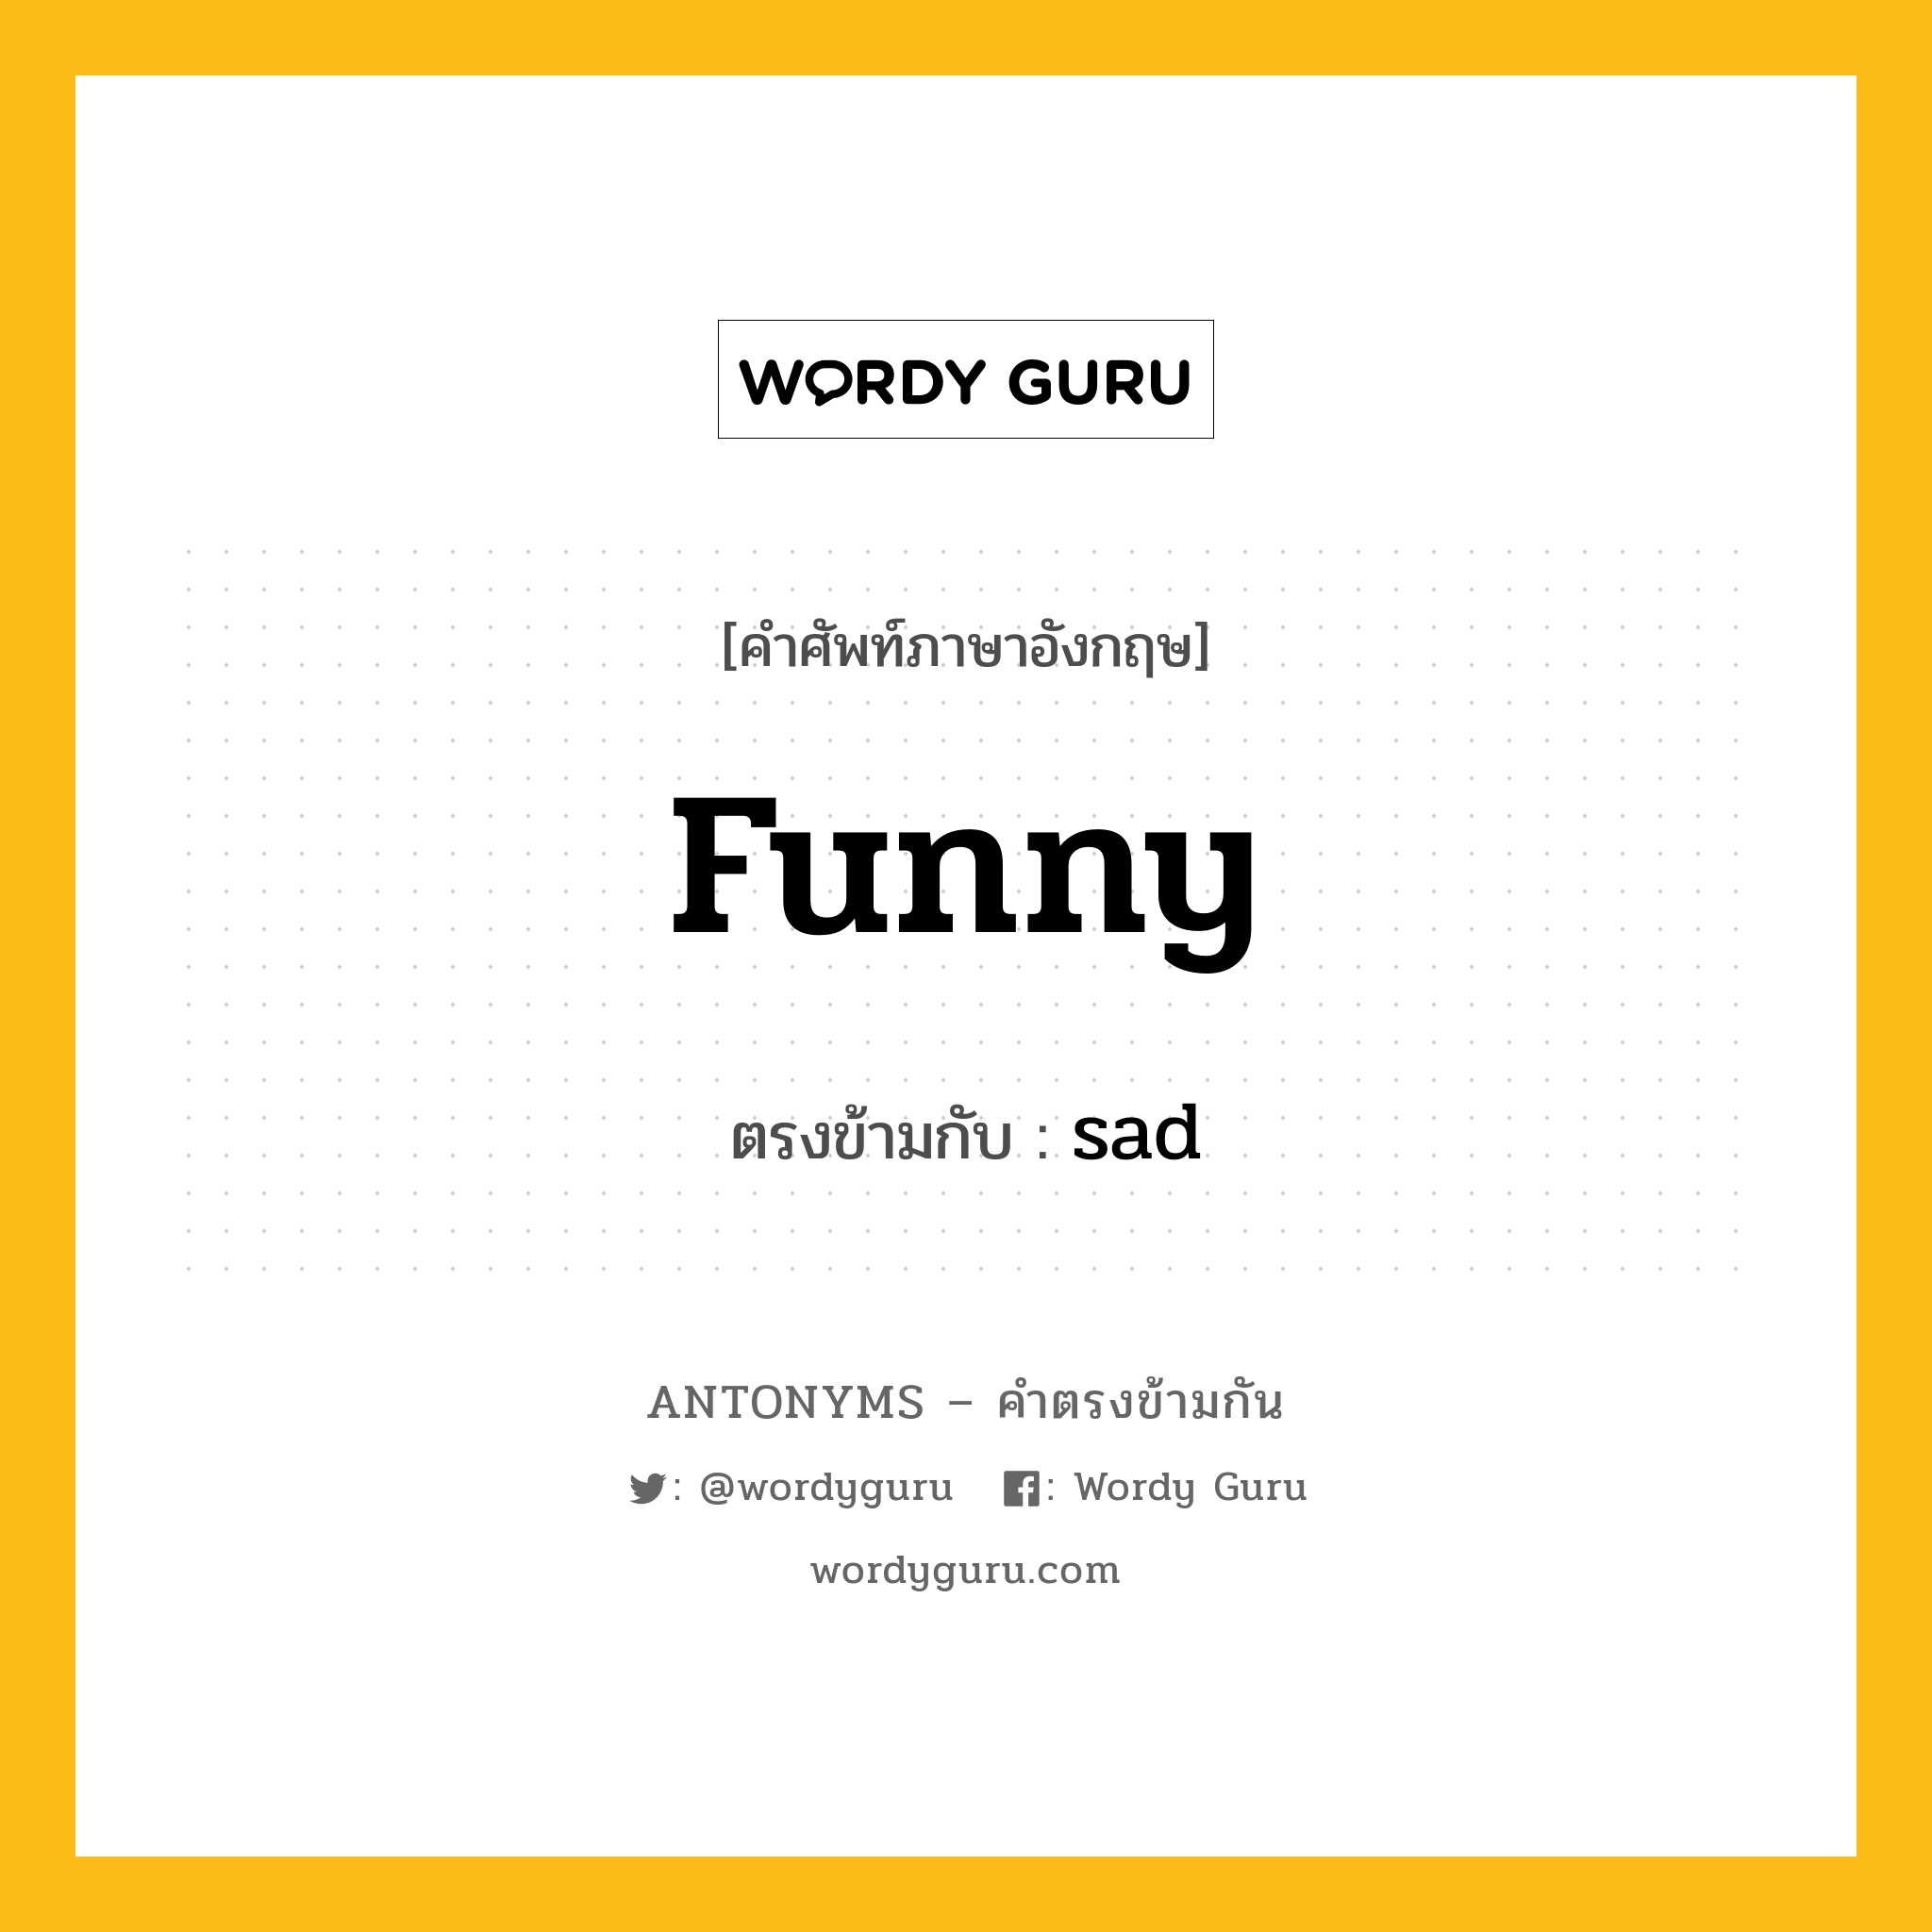 funny เป็นคำตรงข้ามกับคำไหนบ้าง?, คำศัพท์ภาษาอังกฤษ funny ตรงข้ามกับ sad หมวด sad